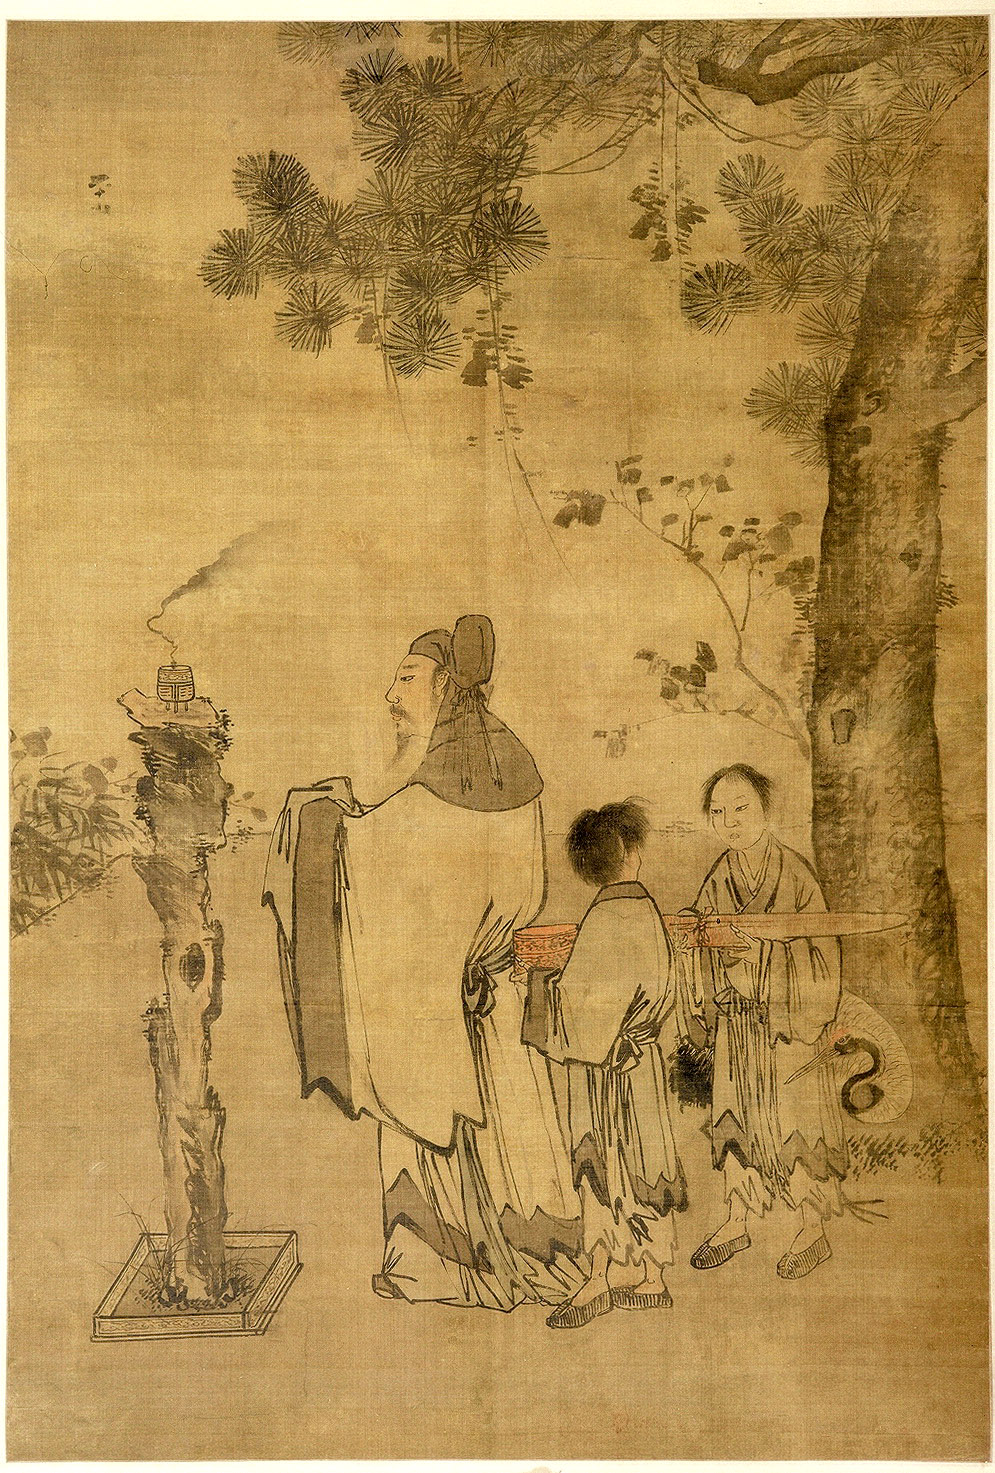 明 张路 设色琴鹤焚香图轴 未知来源【艺术泛舟说】中国绘画上的